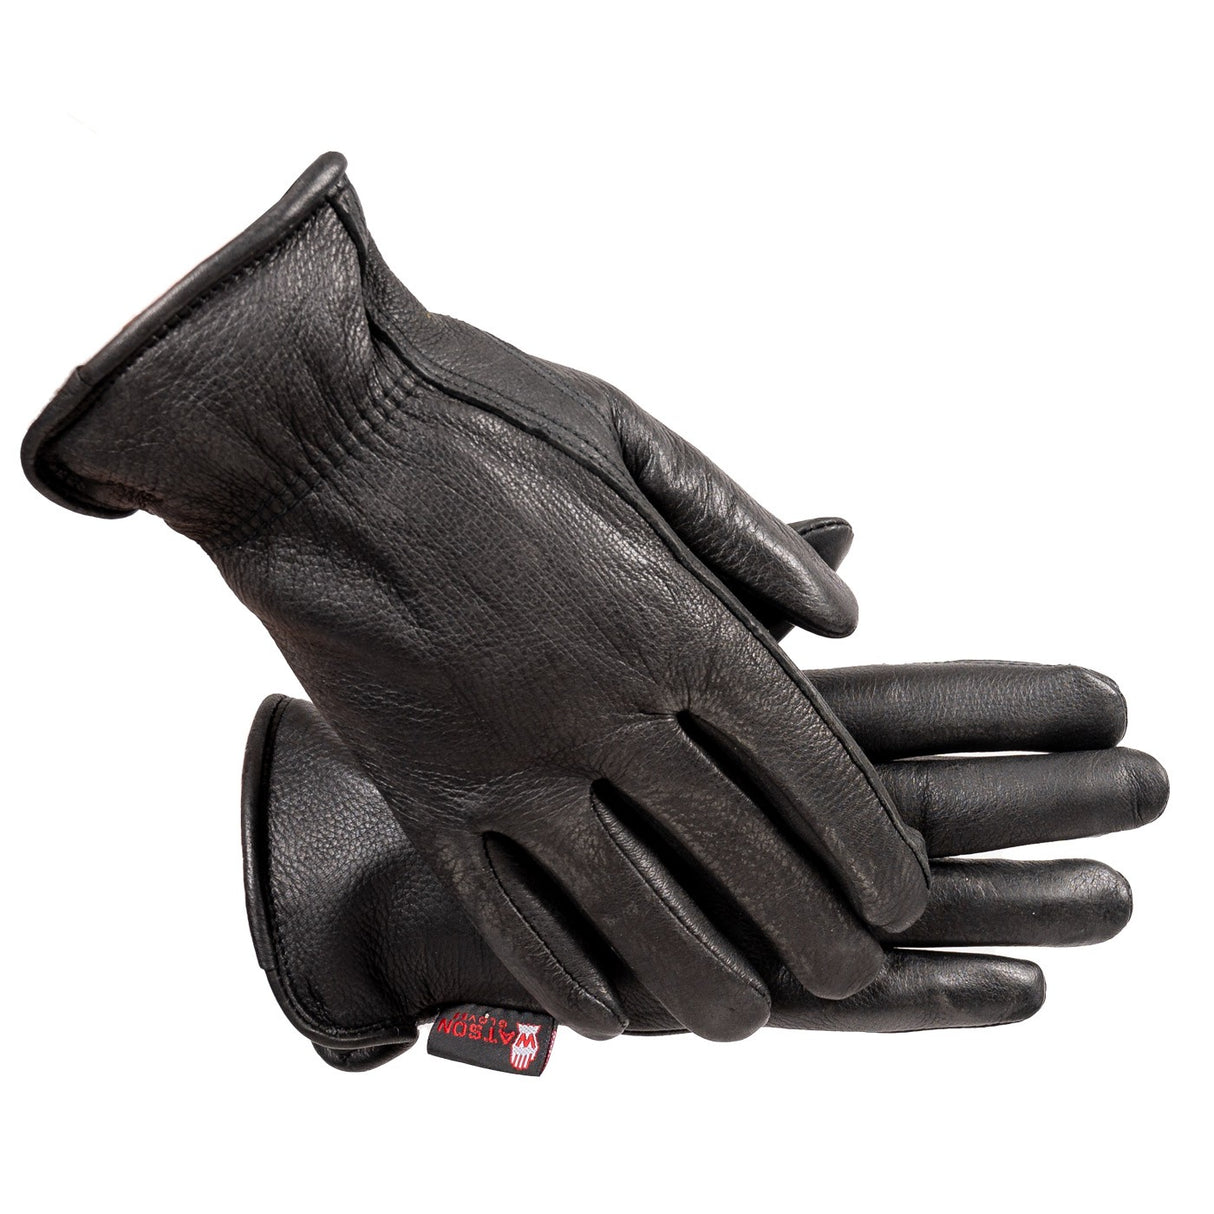 Watson Range Rider Winter Gloves - Men's